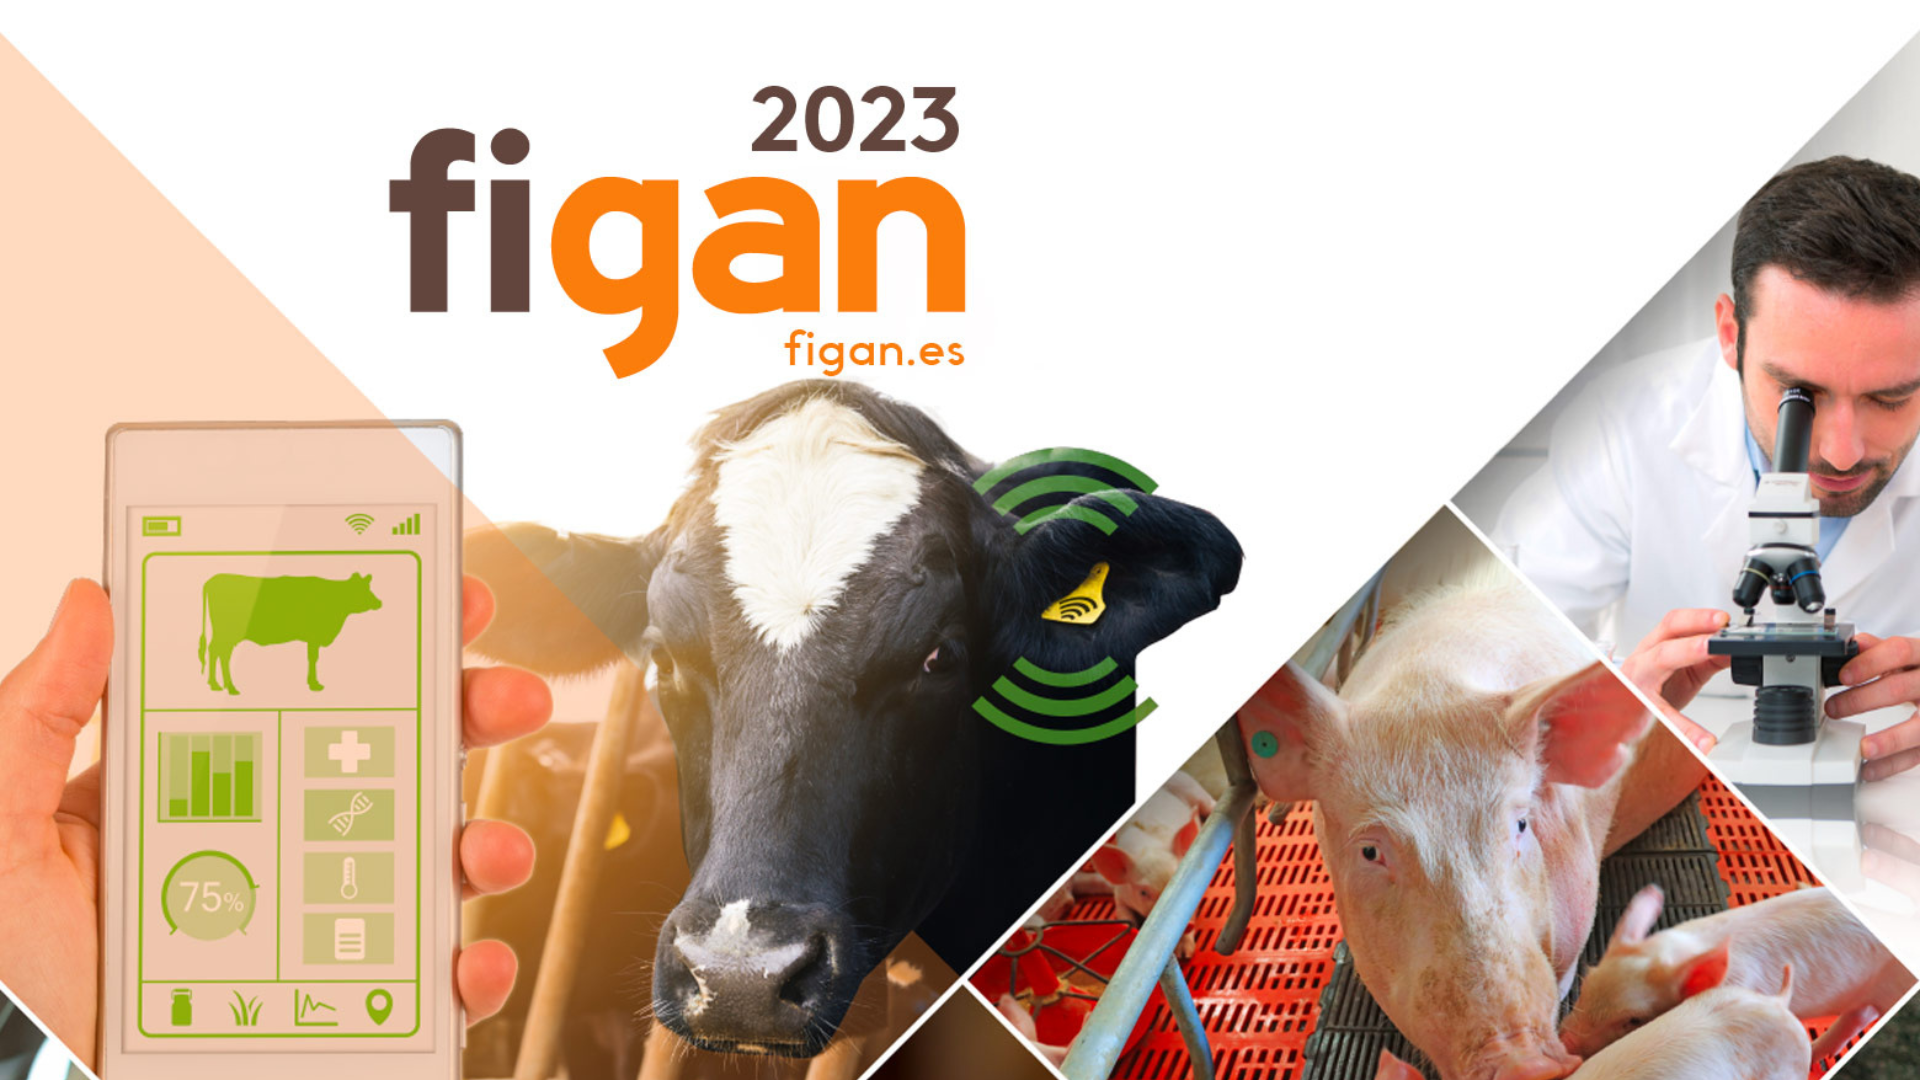 NutriNAV, el ERP de Ayanet TIC para el sector agroalimentario, estará en FIGAN 2023